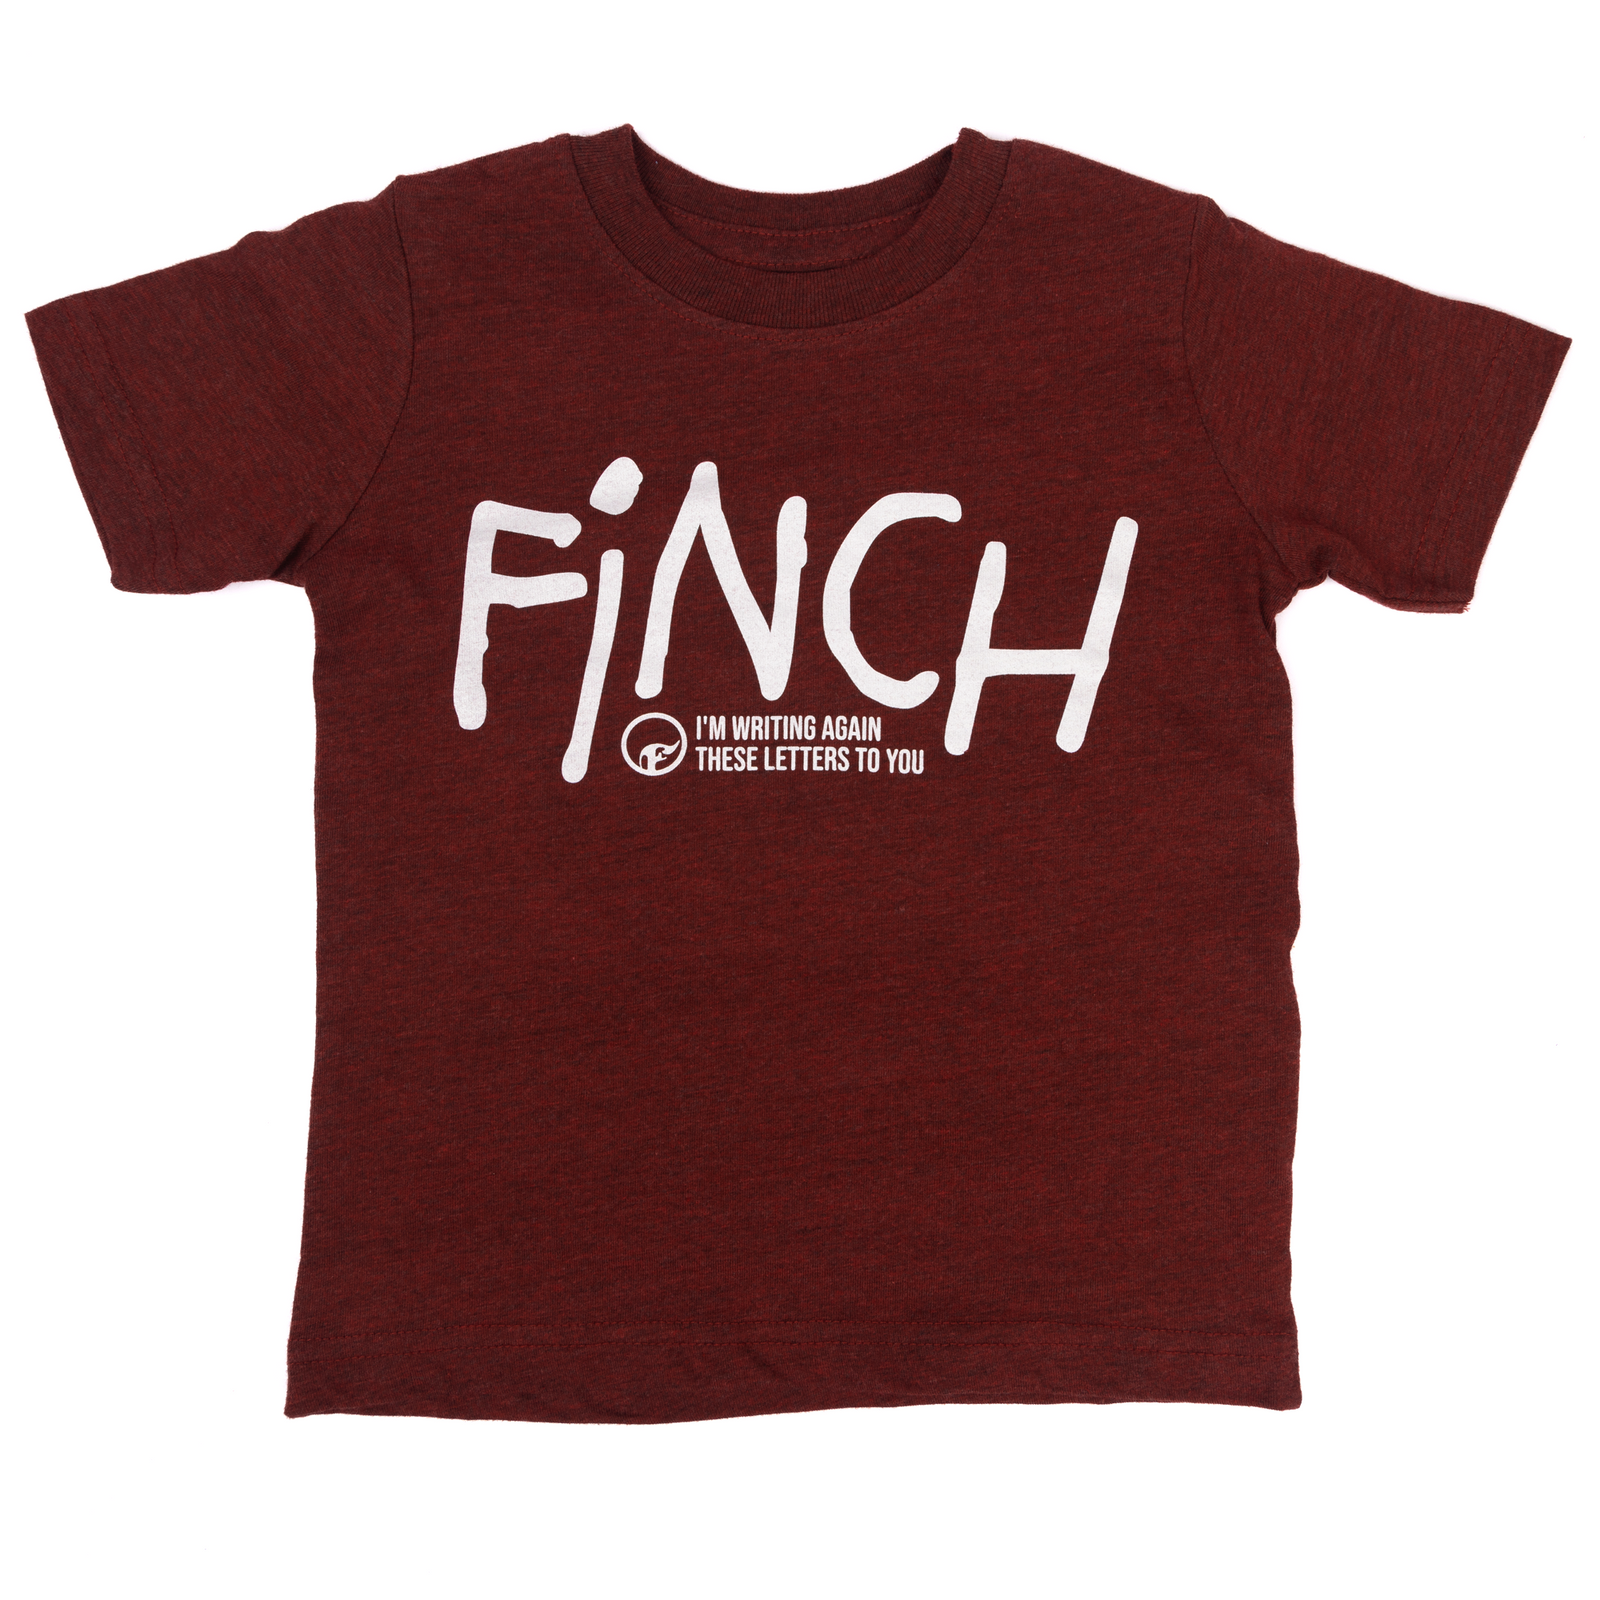 Finch Toddler T-Shirt